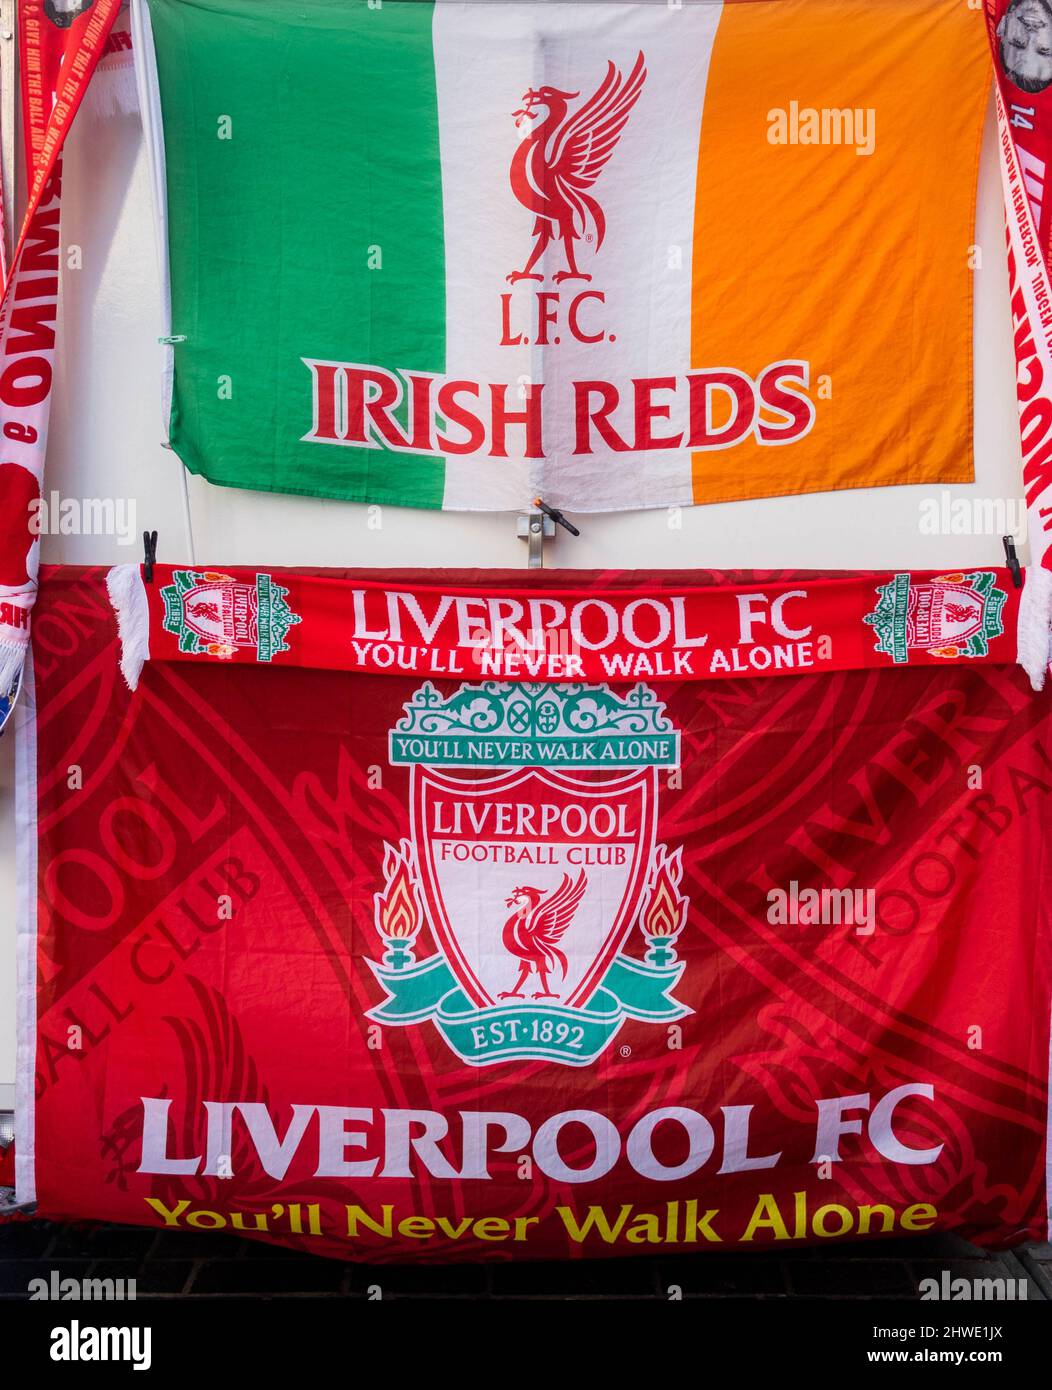 LFC Irish Reds Fußball-Fankioské mit Fahnen und Bannern Stockfoto